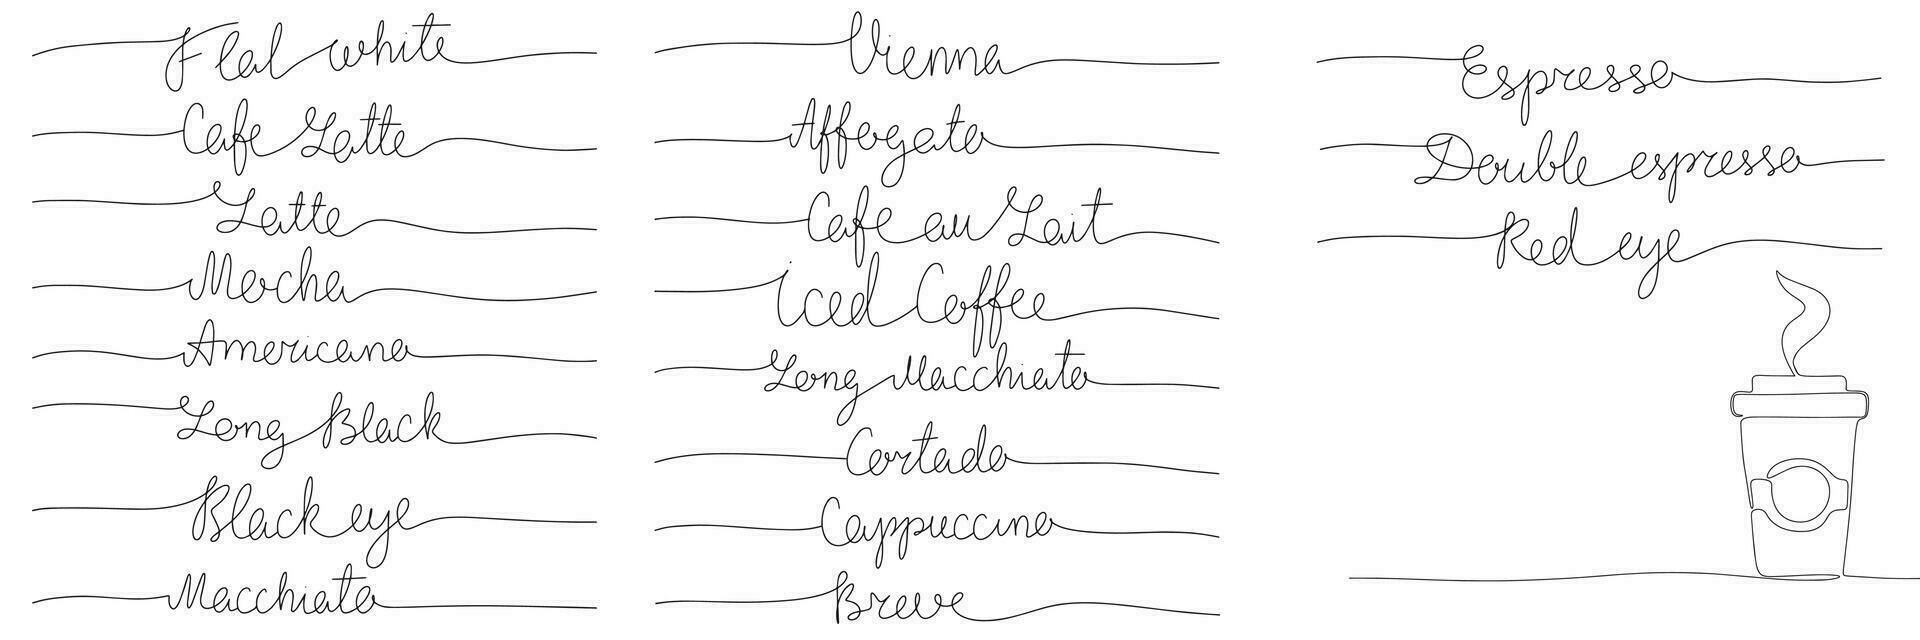 uppsättning av kaffe märka namn för kaféer och förpackning. stor samling av kaffe namn i ett linje kontinuerlig. linje konst monoline vektor illustration.